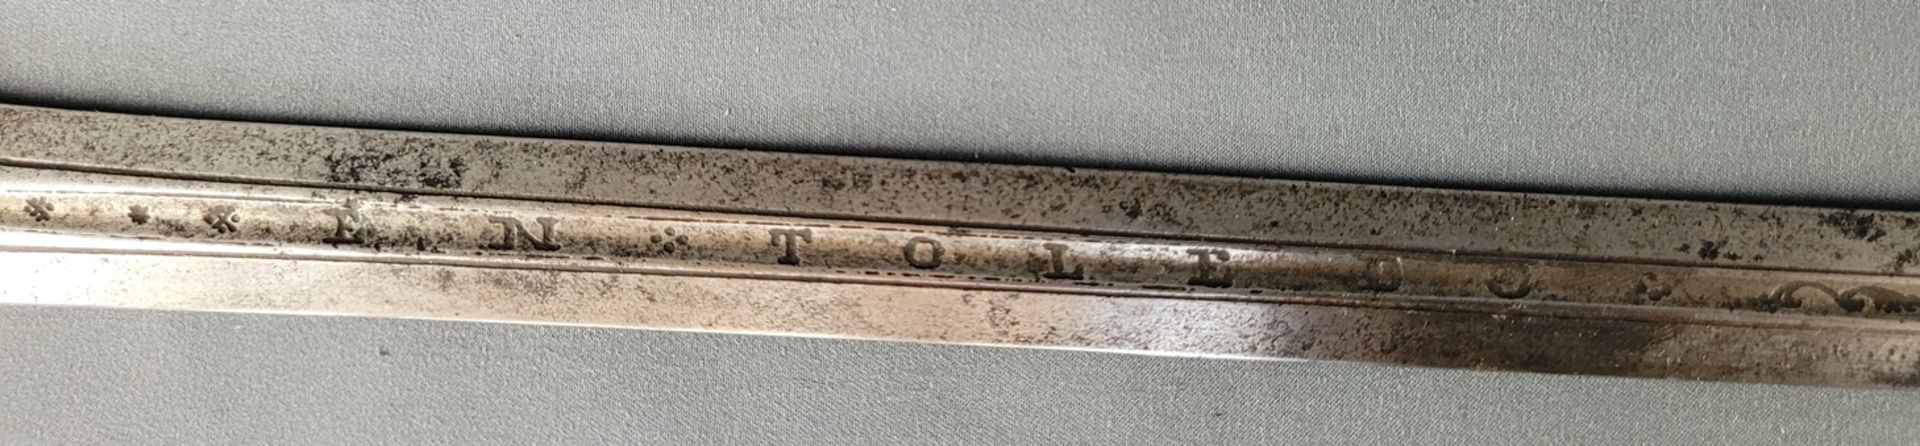 Zwei Schwertklingen, eine geschwungen, einschneidig, ziseliert mit floralem Dekor, L 97 cm, Flugros - Bild 4 aus 5